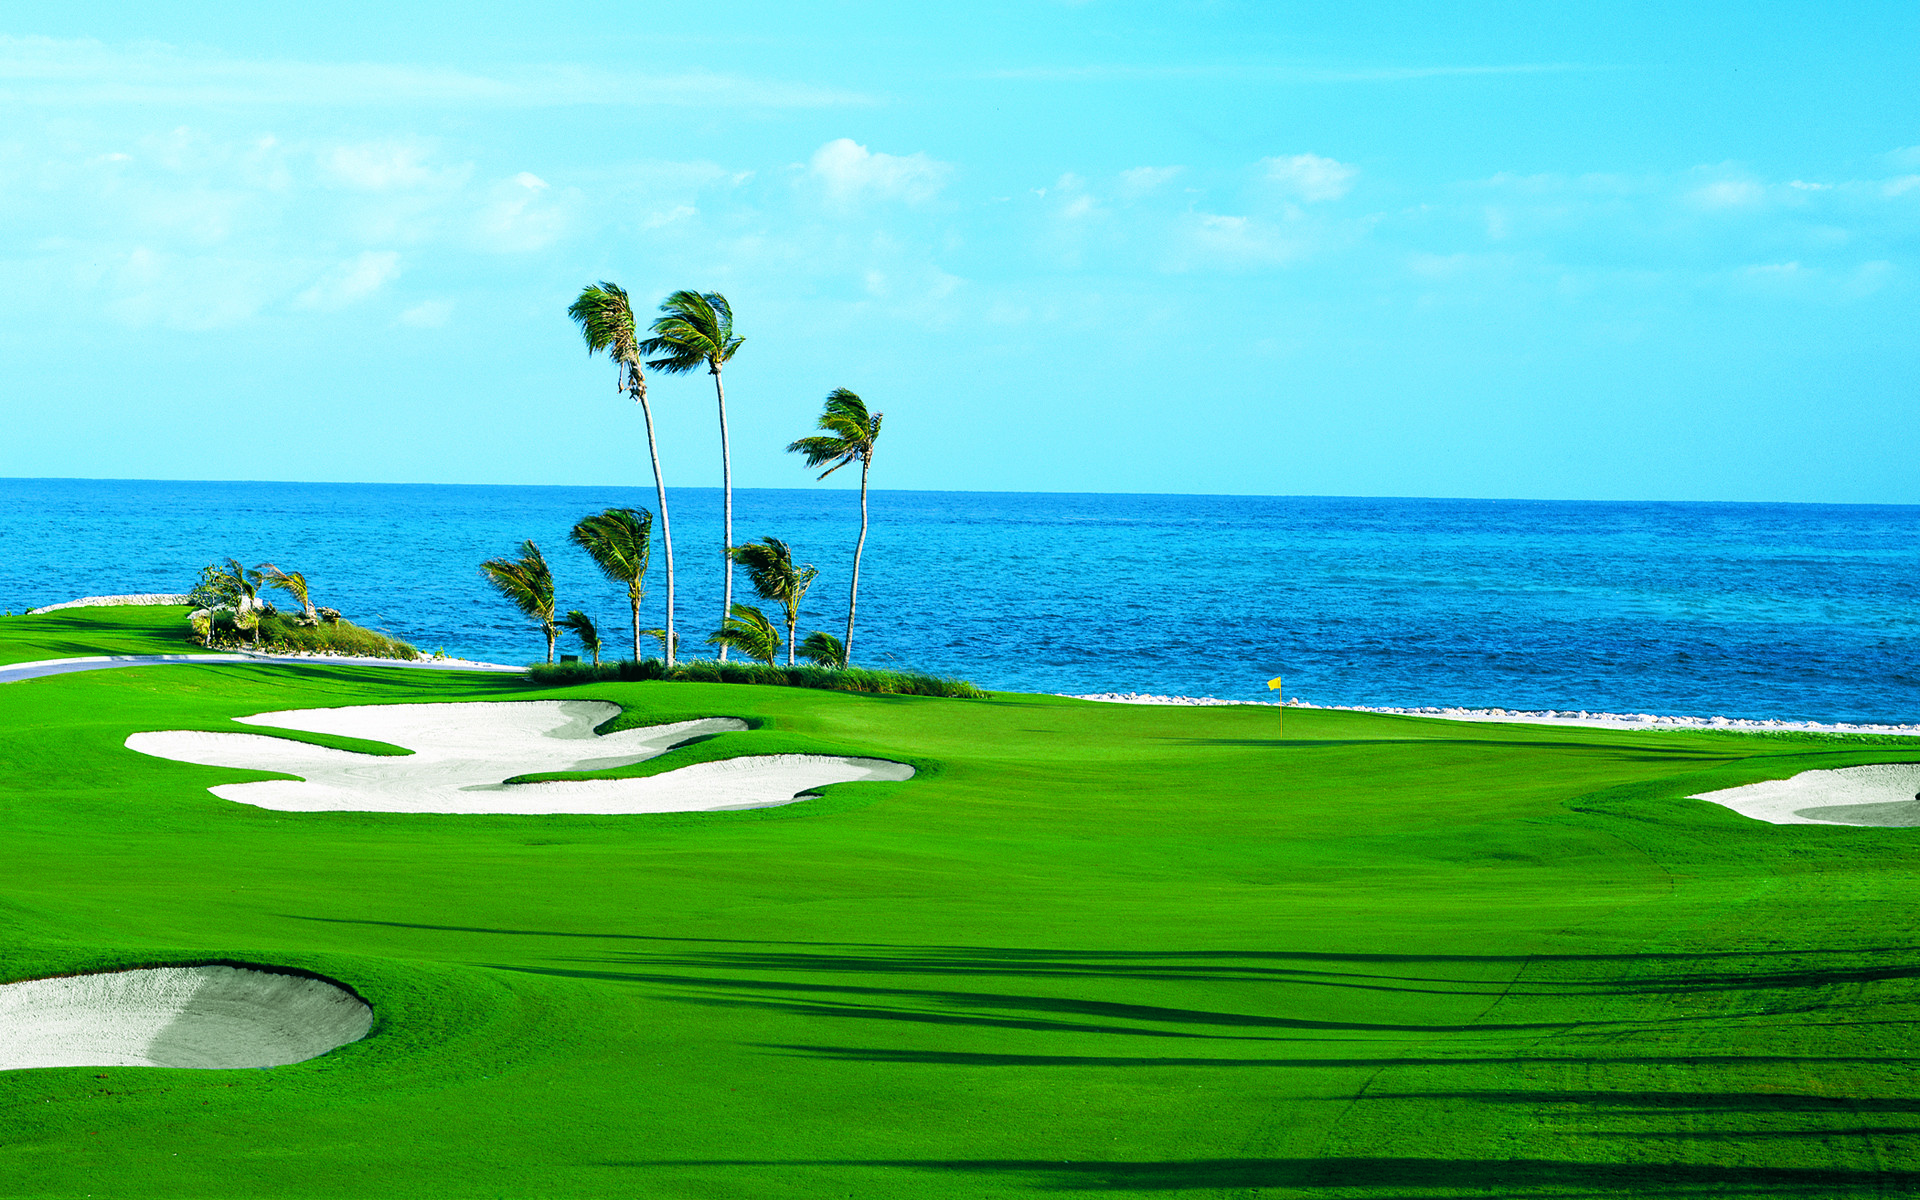 Golf Course Landscape HD desktop wallpaper High Definition | HD Wallpapers  | Pinterest | Hd wallpaper, Wallpaper and Wallpaper backgrounds